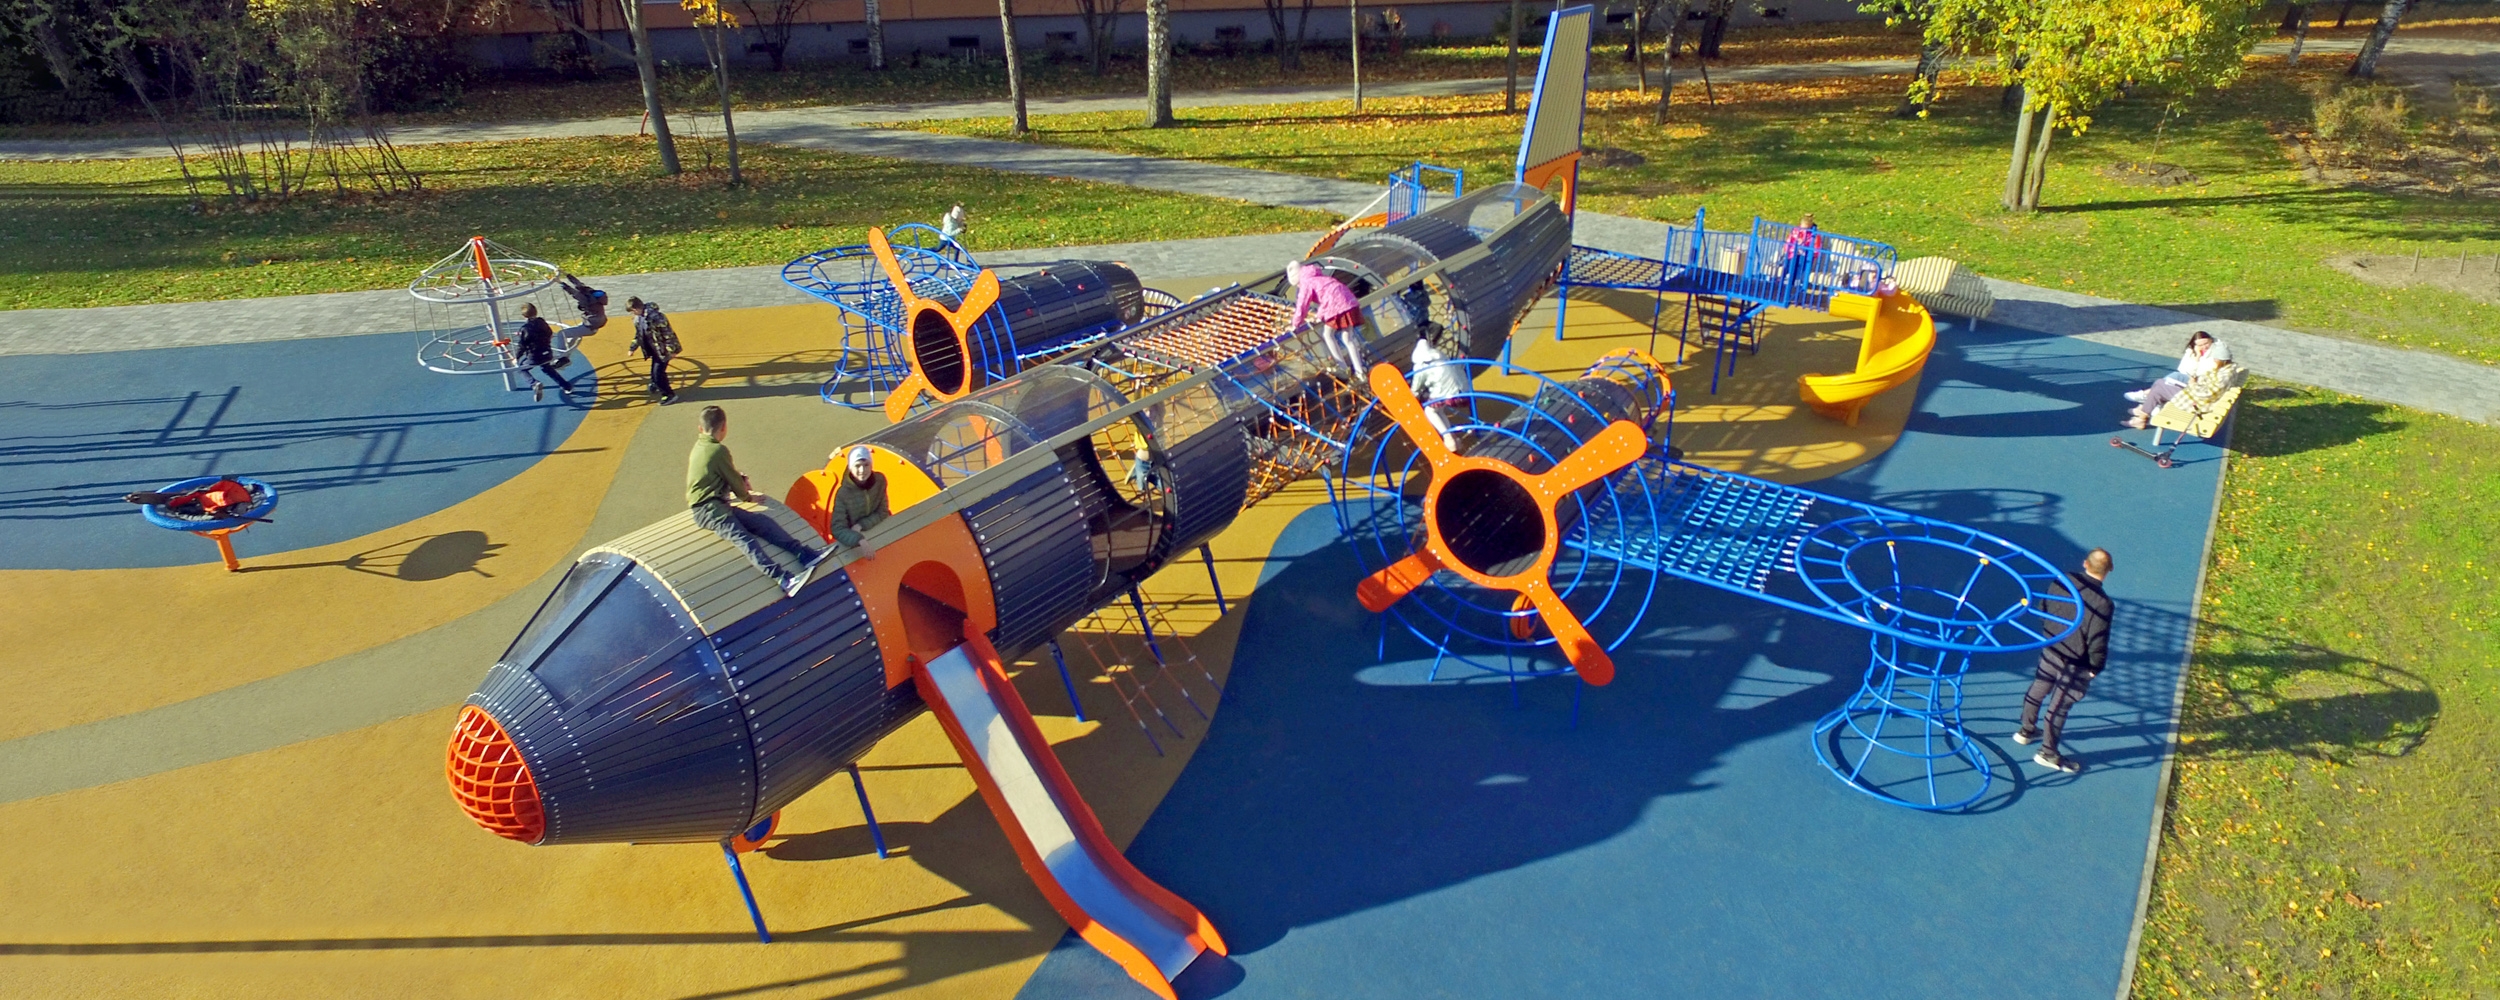 Детские площадки в виде корабликов, машинок и самолетов — транспортная  тематика